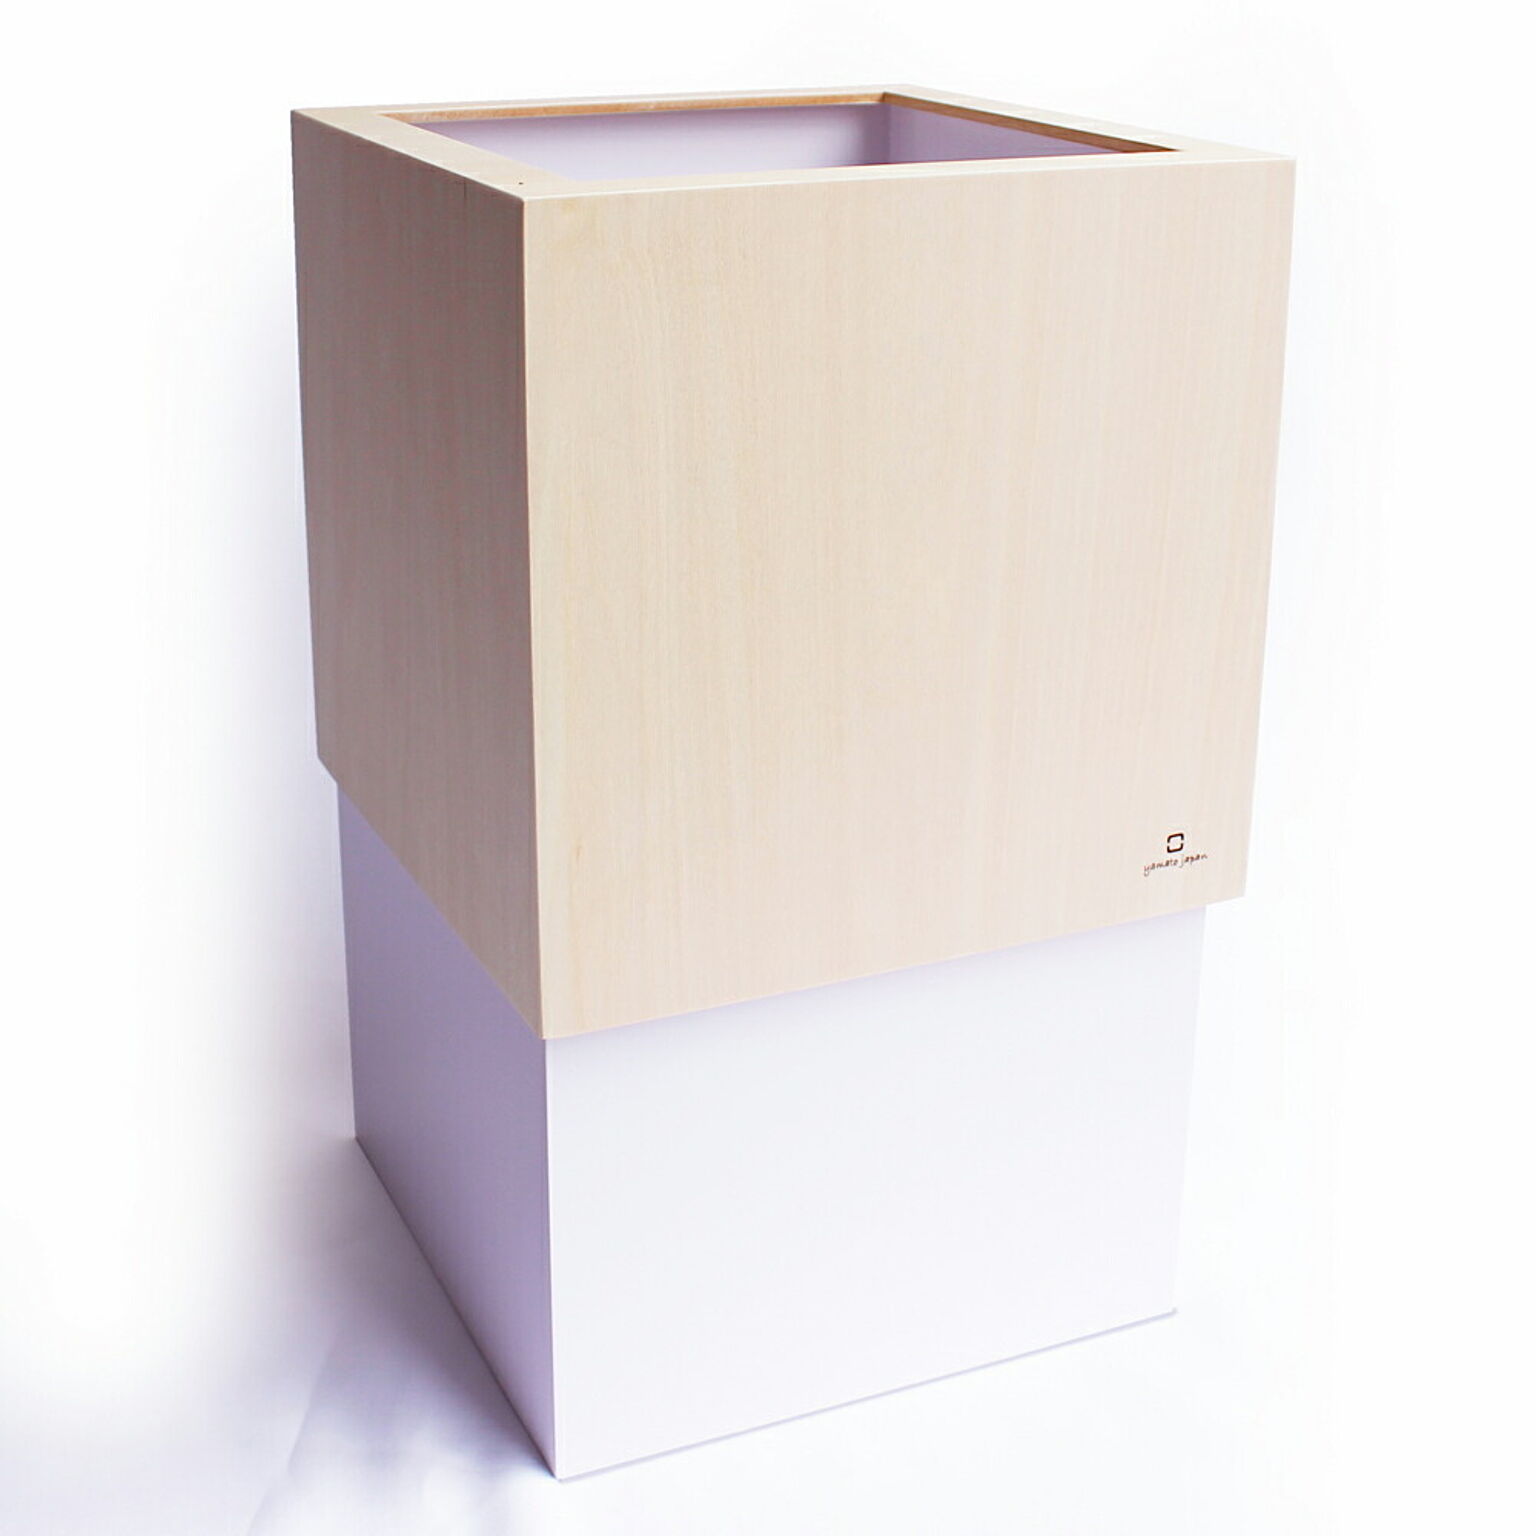 ヤマト工芸 W CUBE ゴミ箱 ダストボックス 日本製 10L 天然木 木製 隠せる ビニール袋 ゴミ袋 リビング 寝室